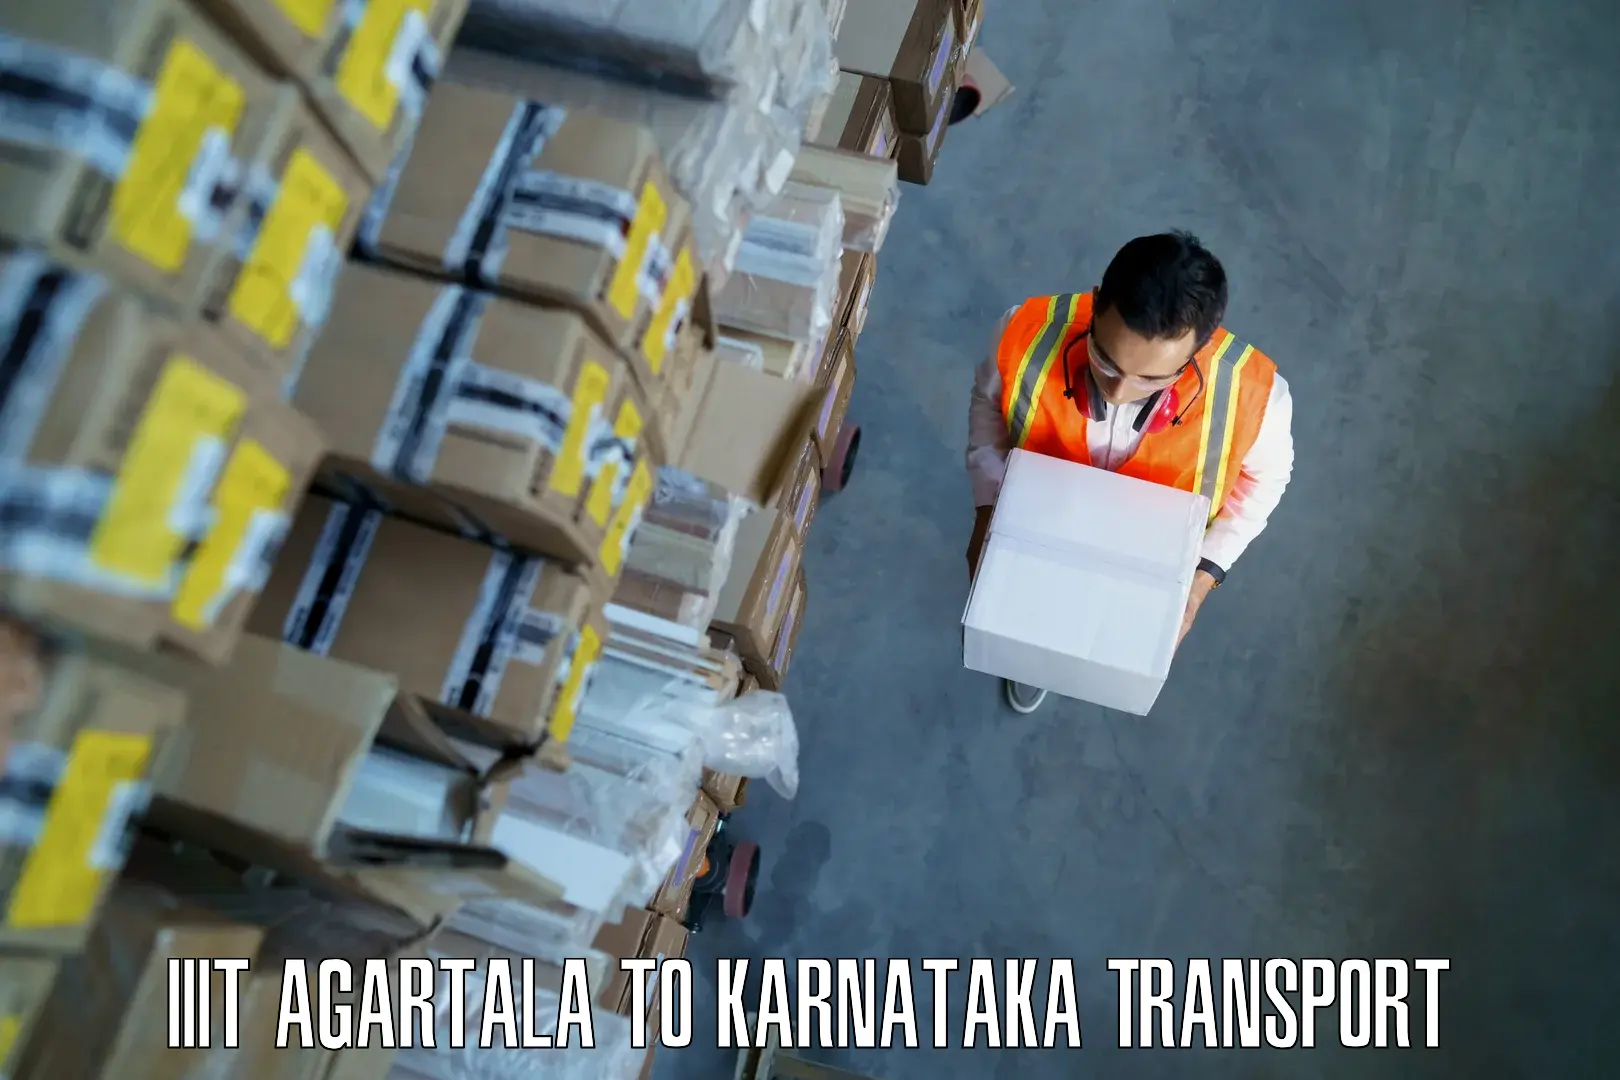 Vehicle parcel service IIIT Agartala to Thirthahalli